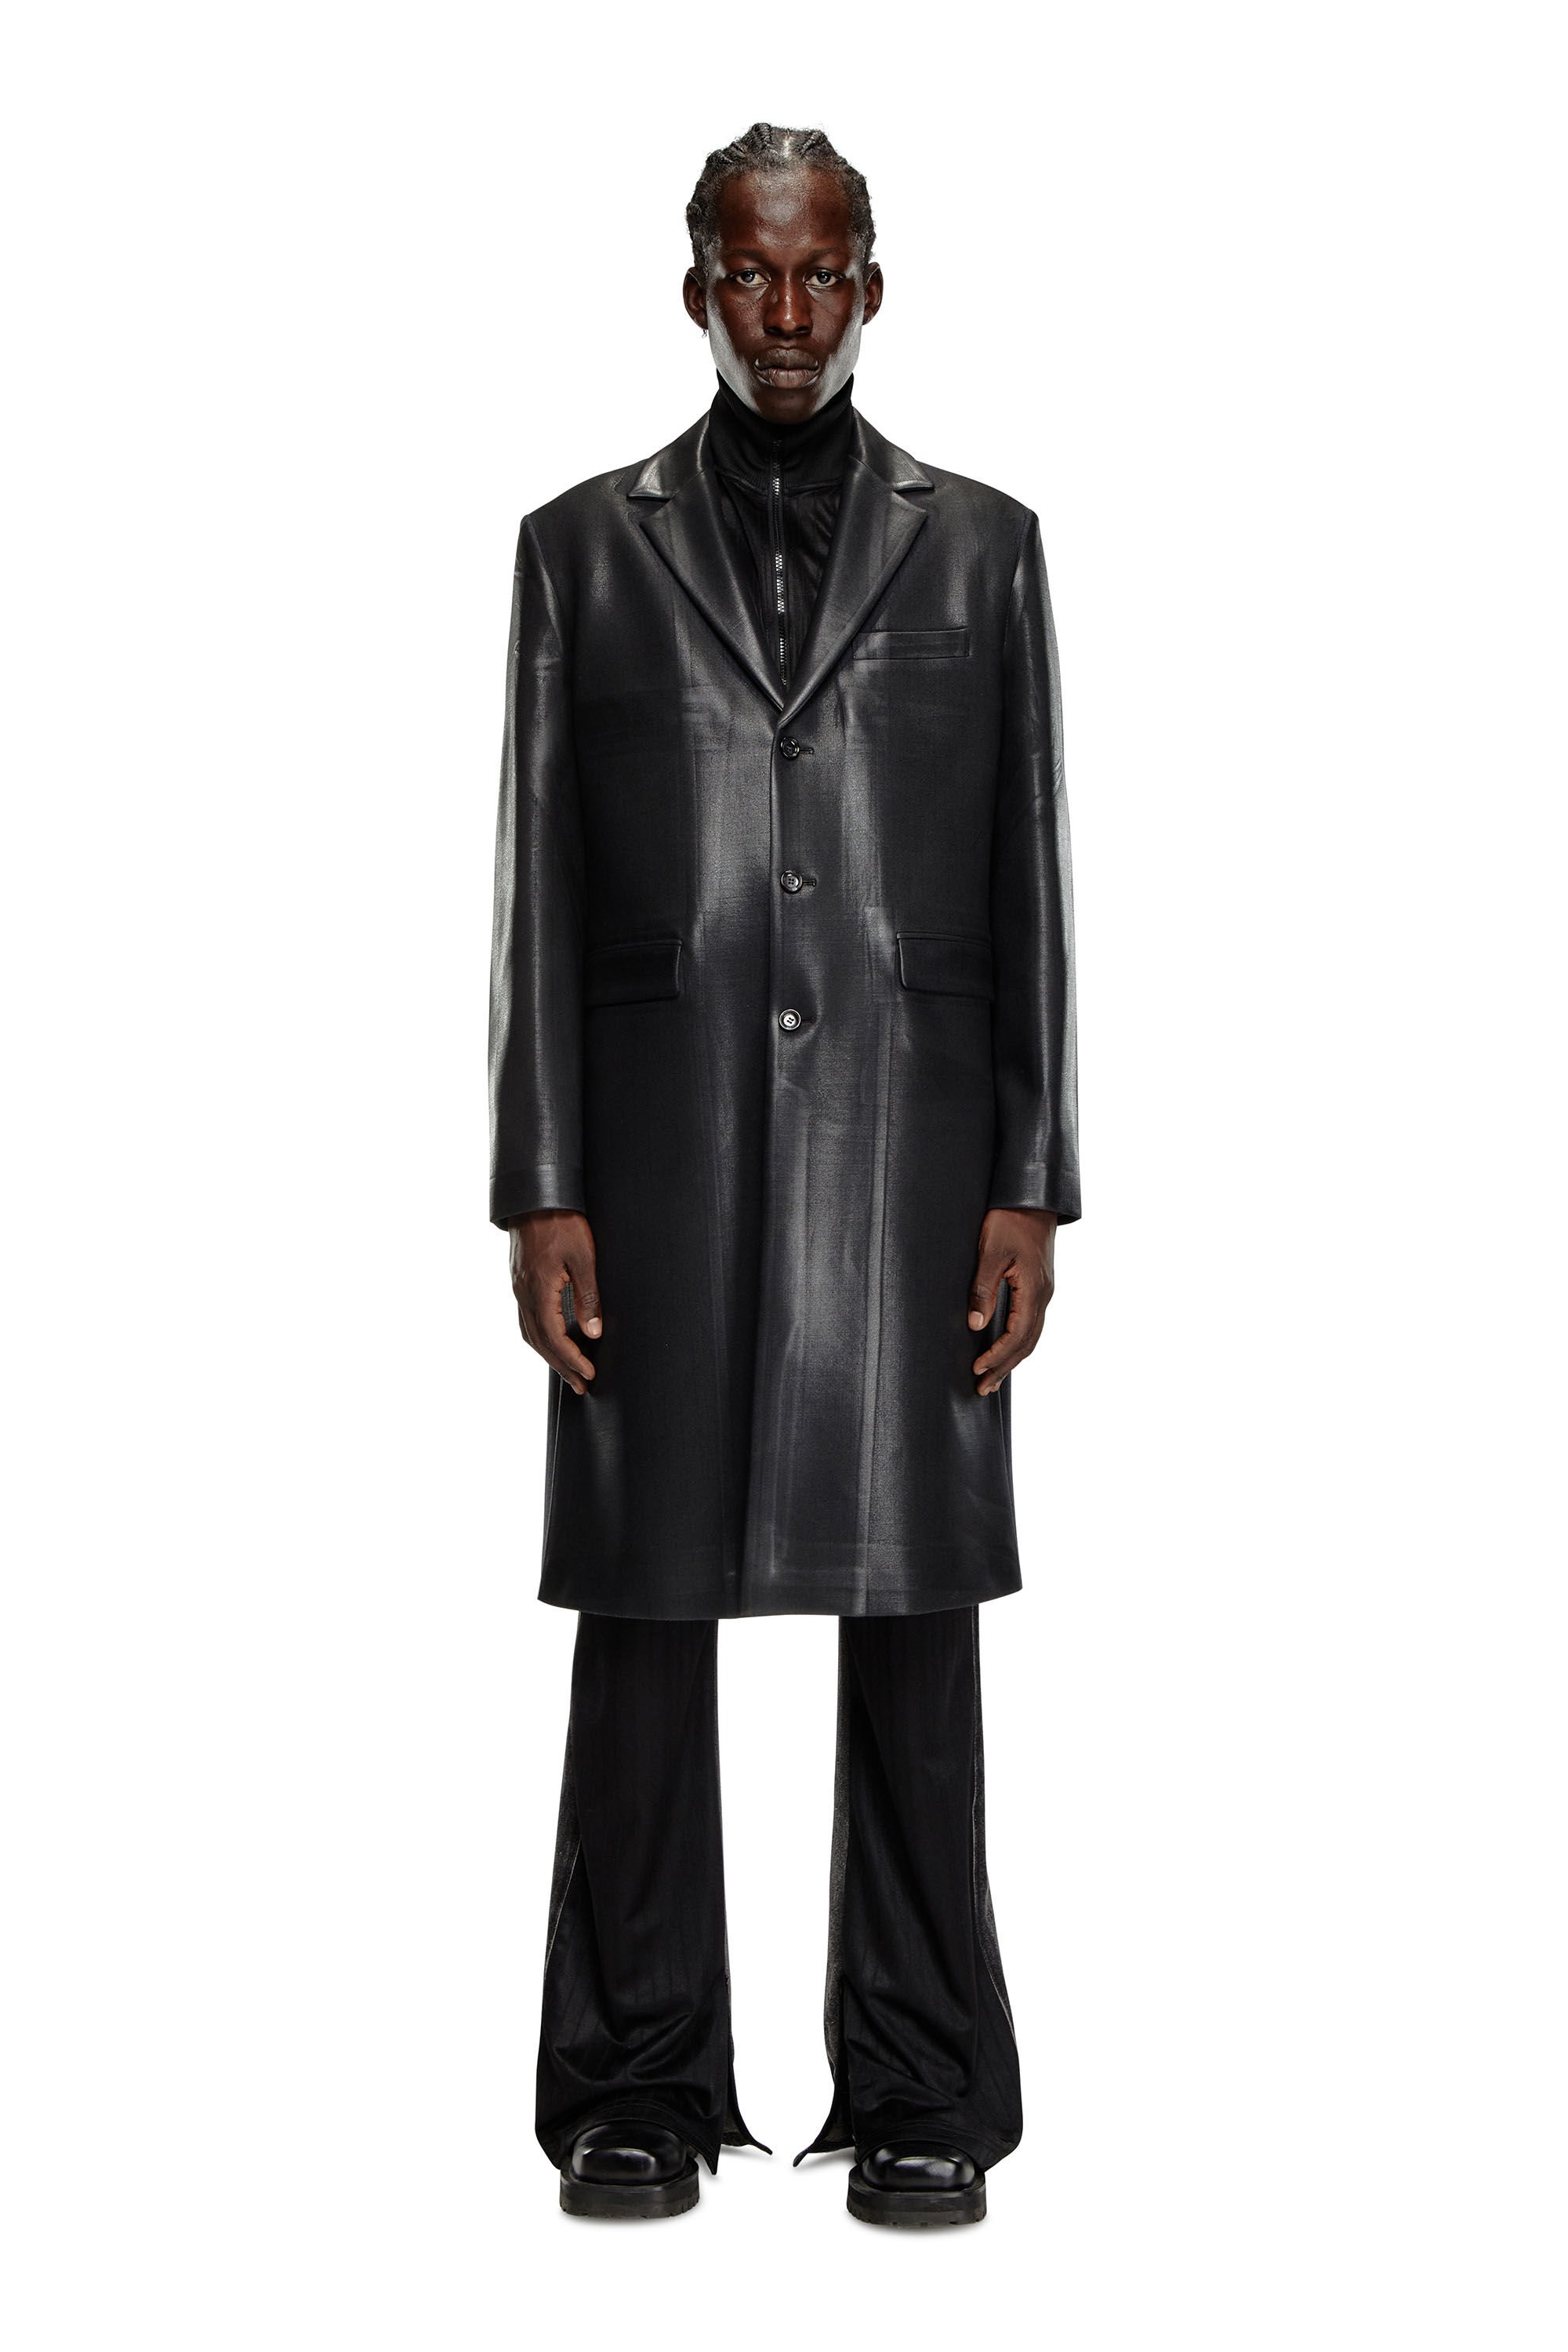 Diesel - J-DENNER, Man Coat in pinstriped cool wool in Black - Image 2